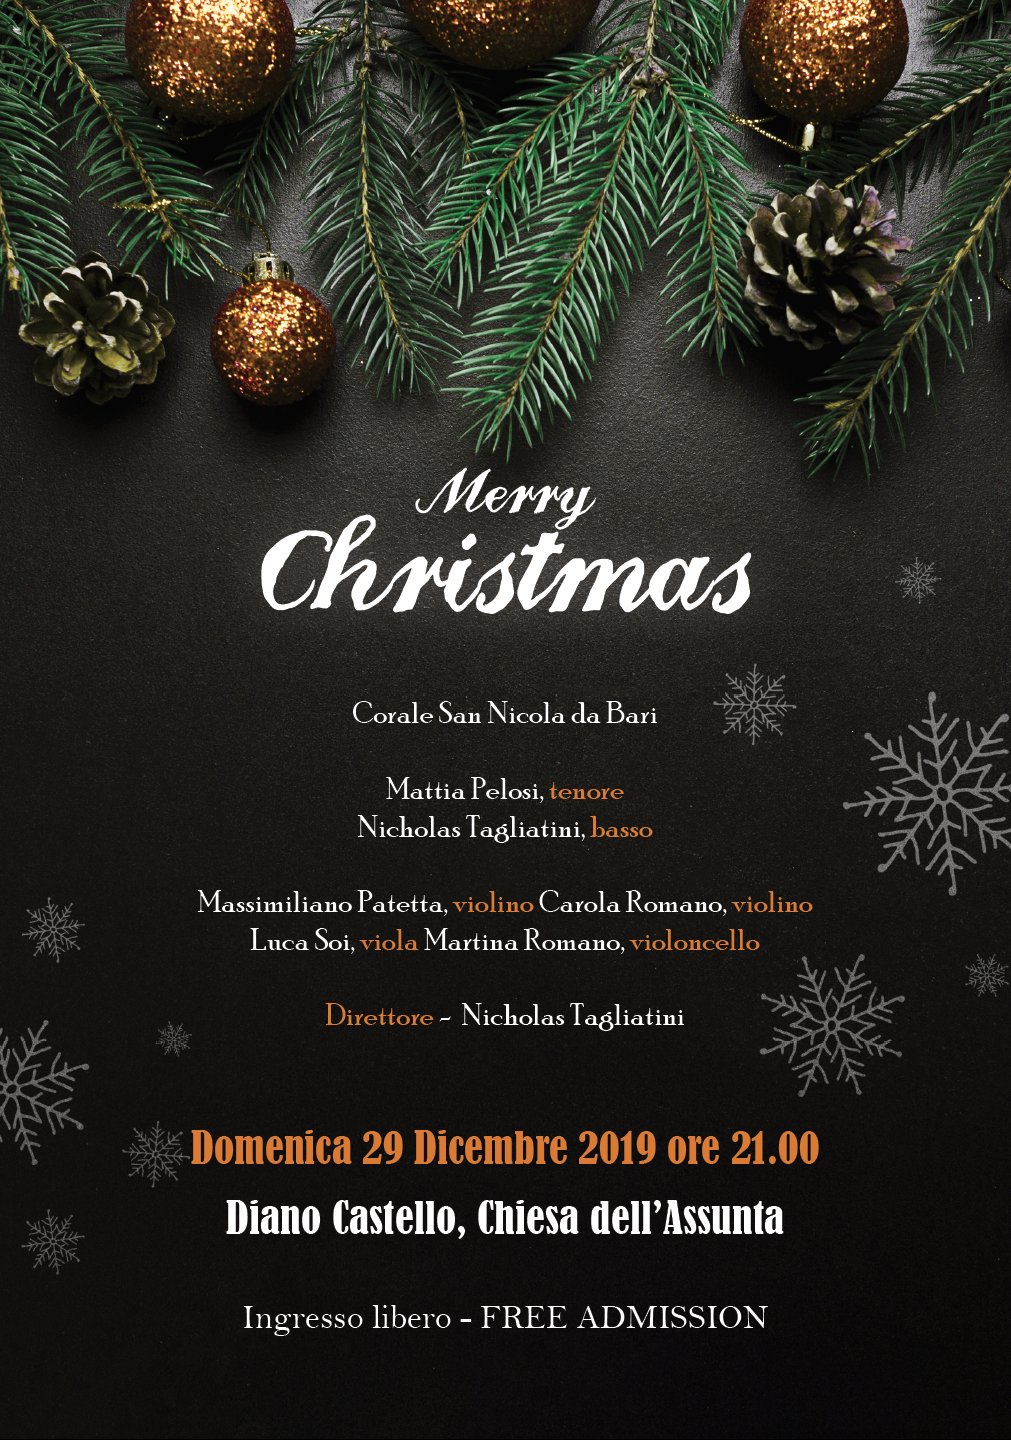 Immagini Natale 1800.Merry Christmas A Diano Castello Va In Scena Il Classico Concerto Di Natale Riviera24